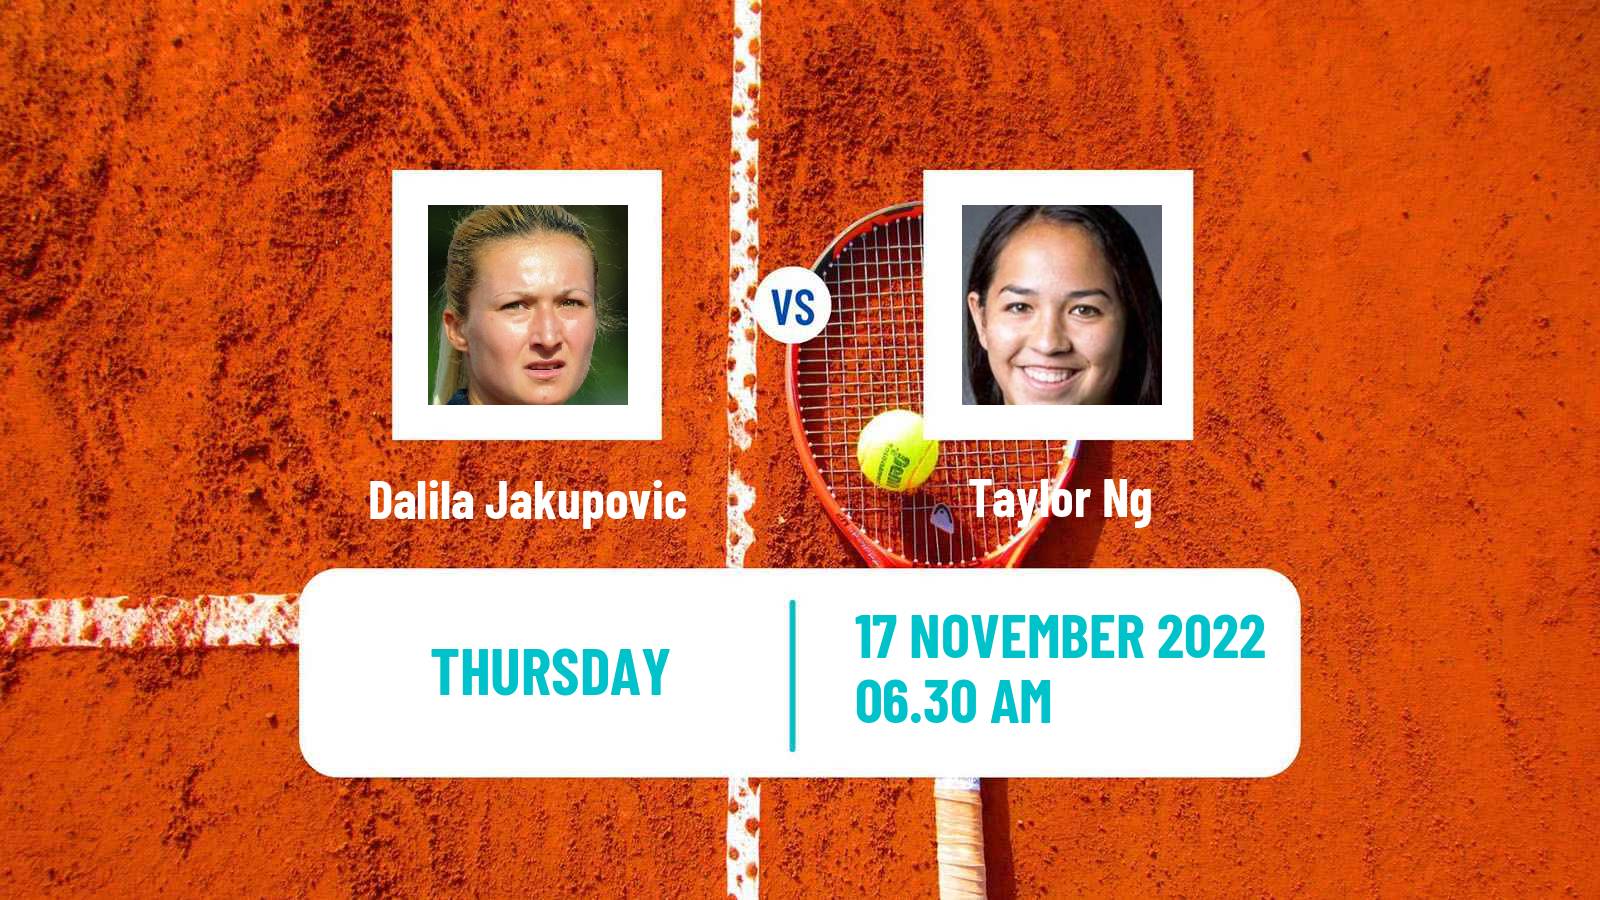 Tennis ITF Tournaments Dalila Jakupovic - Taylor Ng